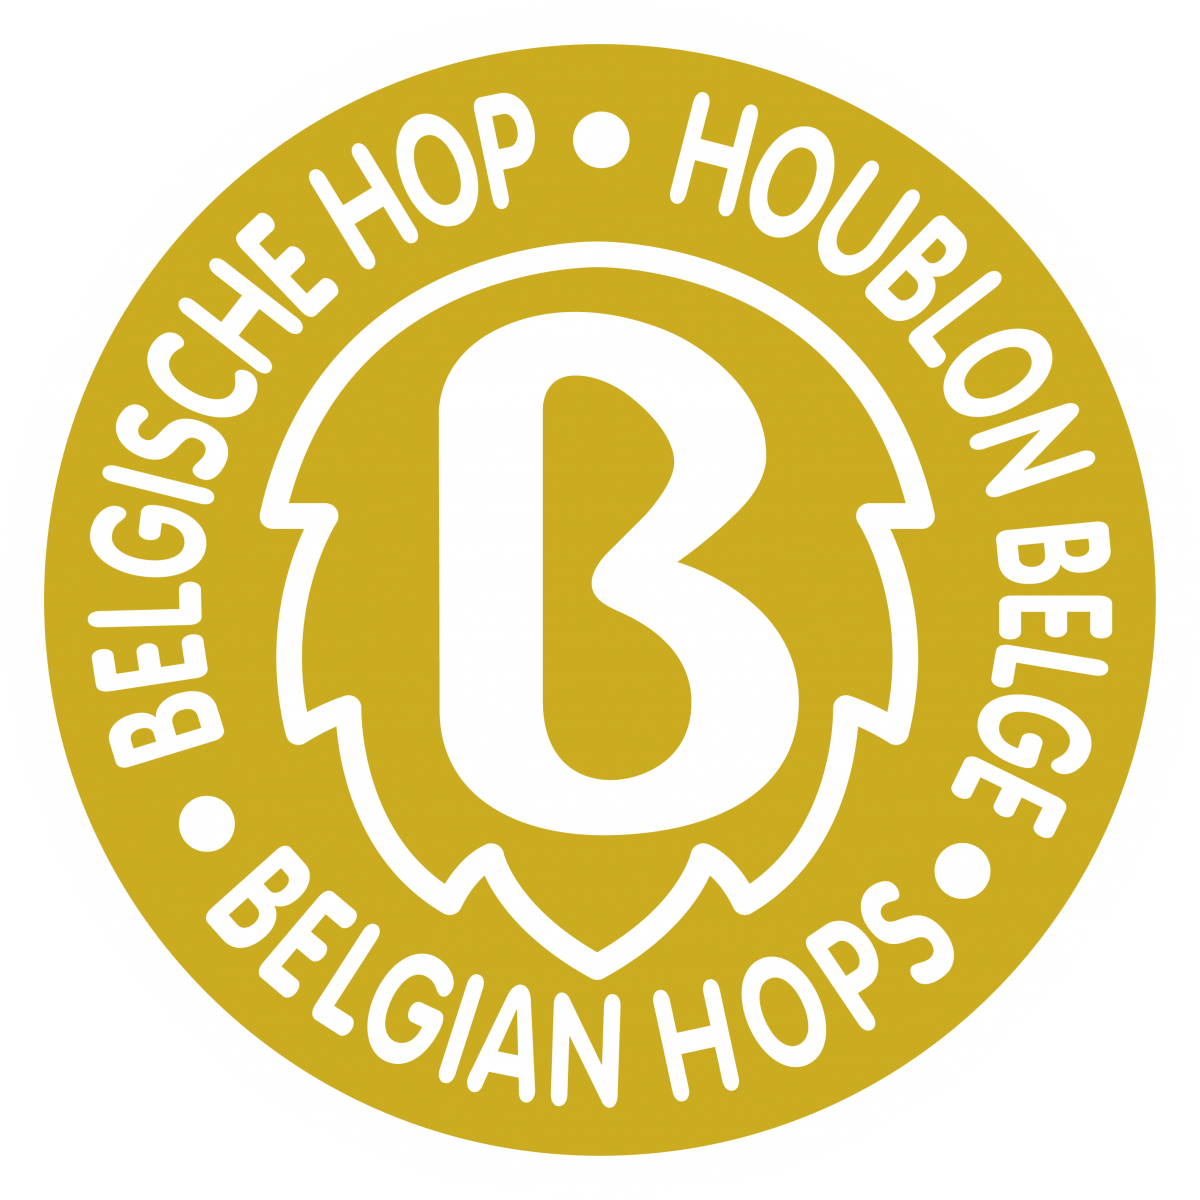 100% Belgische hop